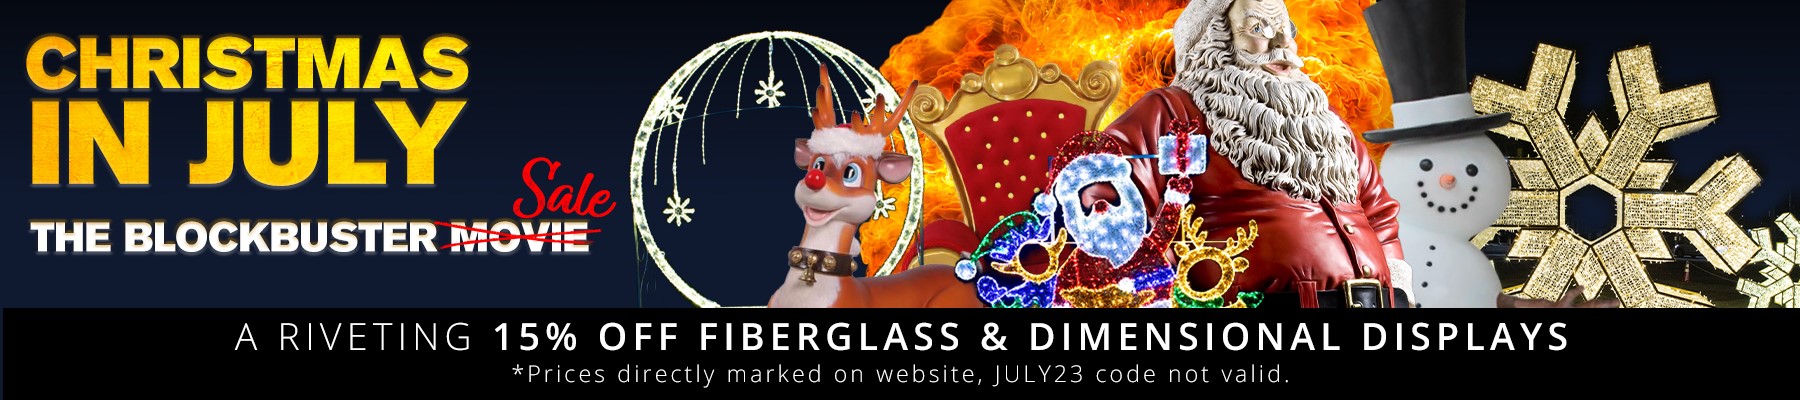 Fiberglass Displays